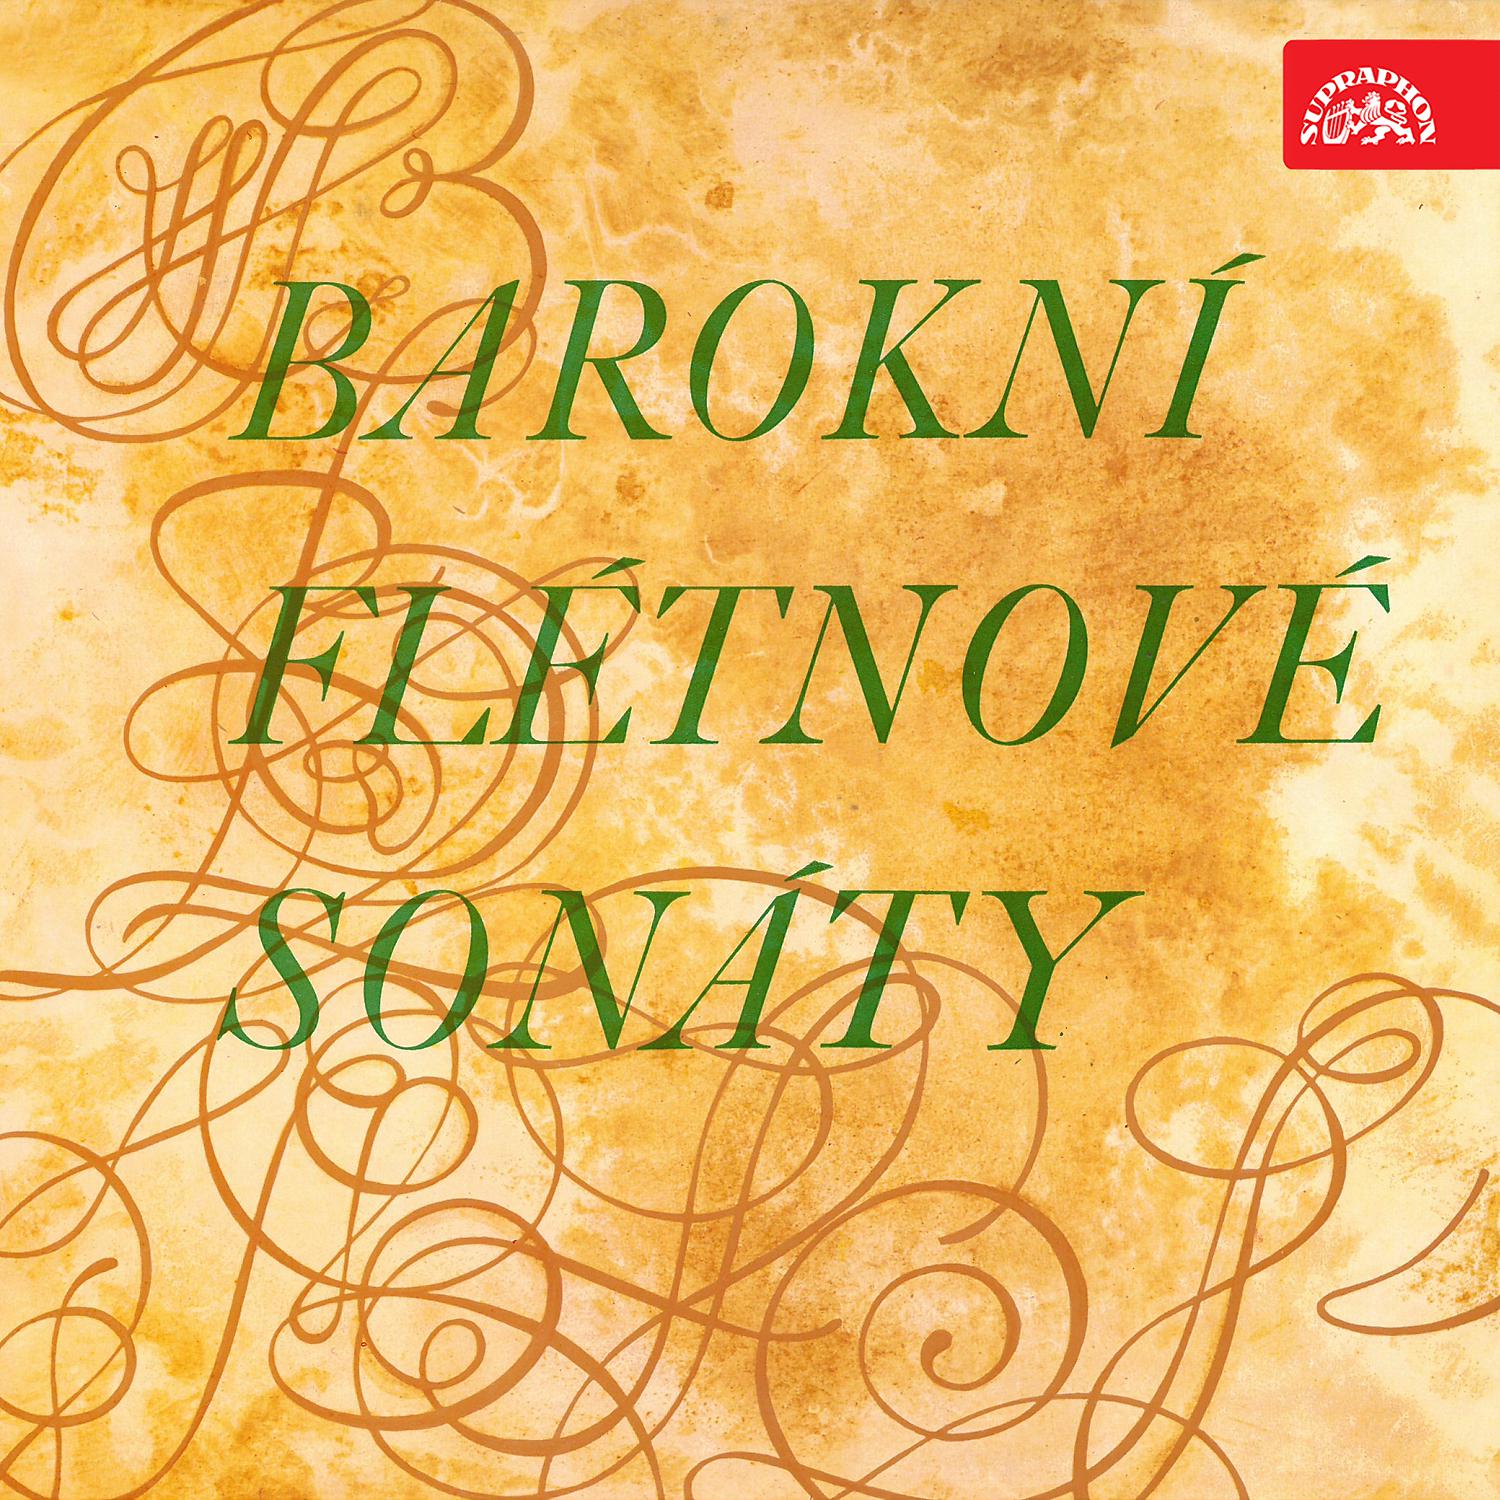 Постер альбома Baroque Flute Sonatas